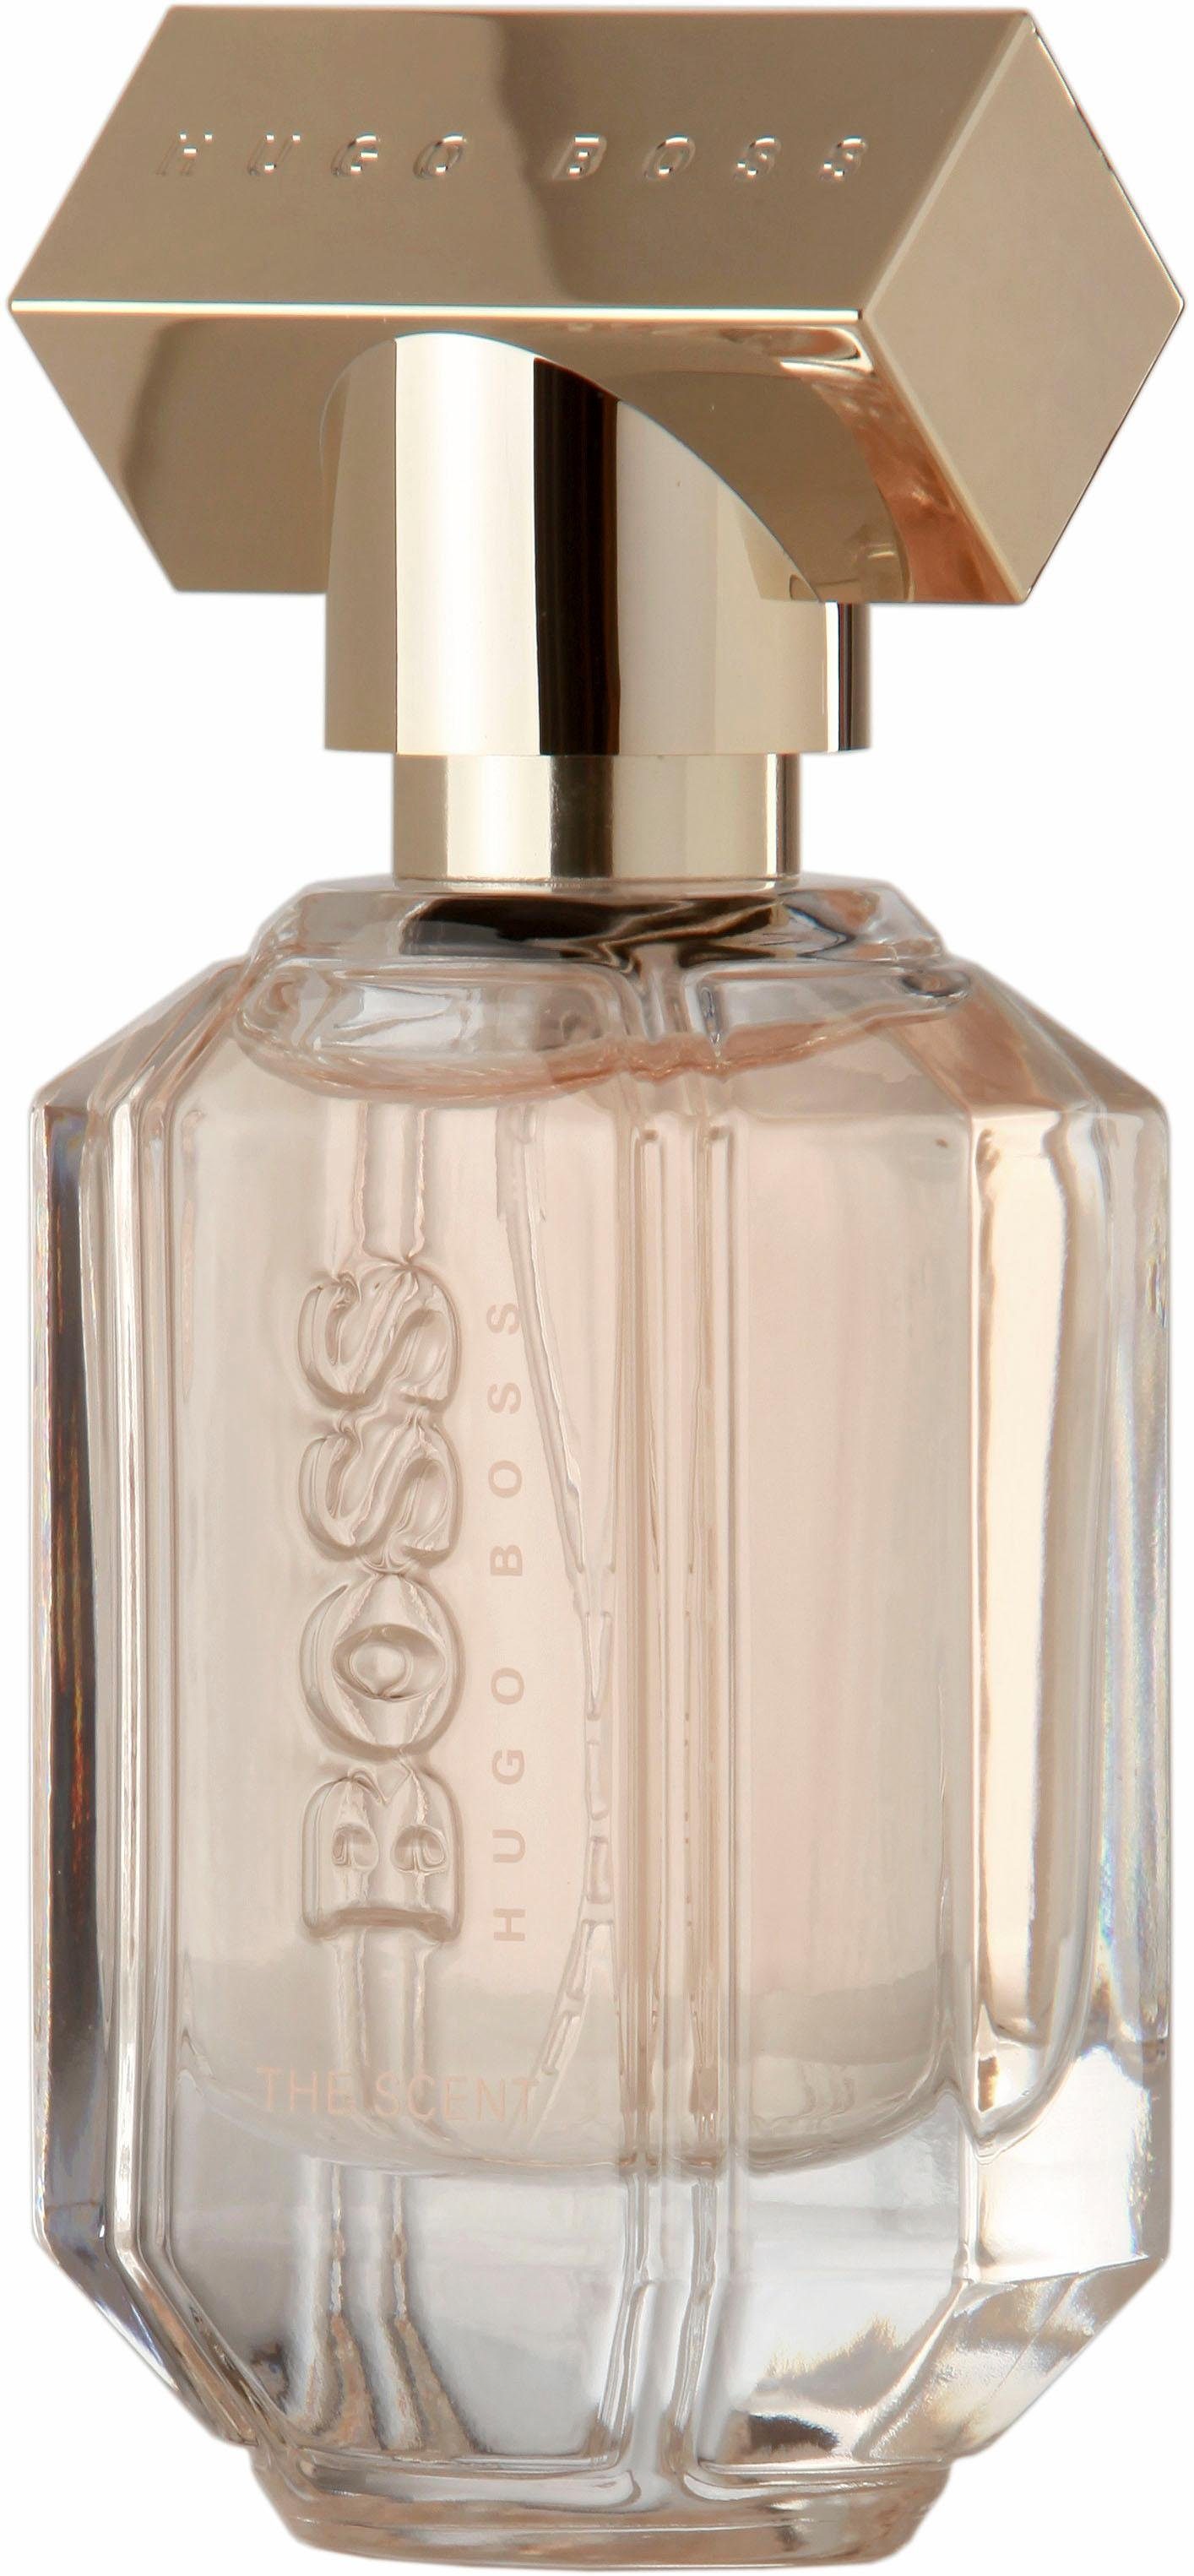 Hugo Boss Damen Parfums online kaufen | OTTO